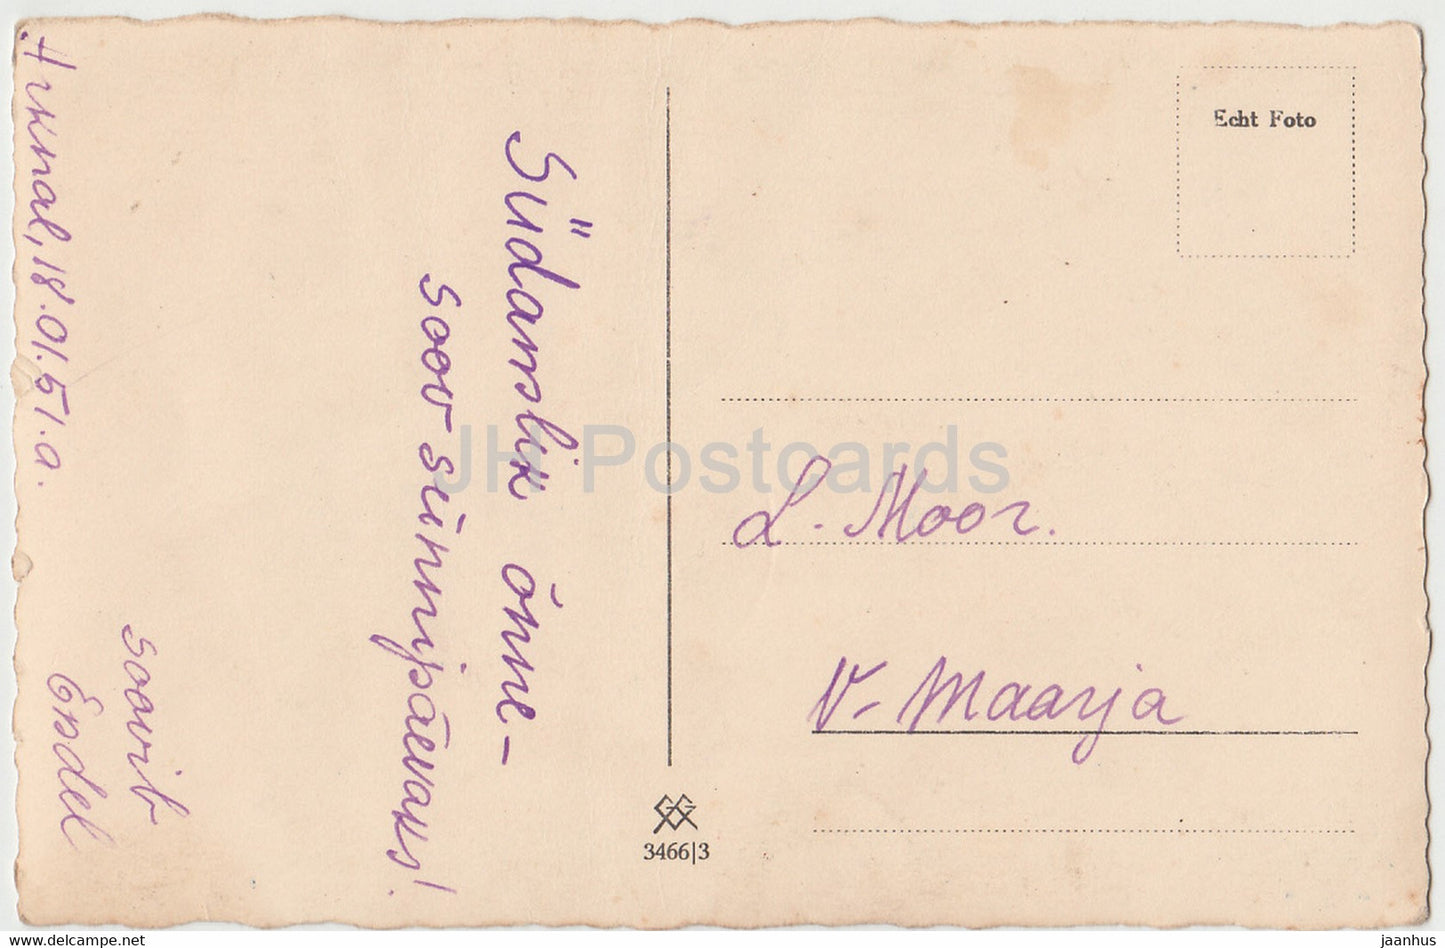 Frau – 3466 – 1951 – Deutschland – alte Postkarte – gebraucht